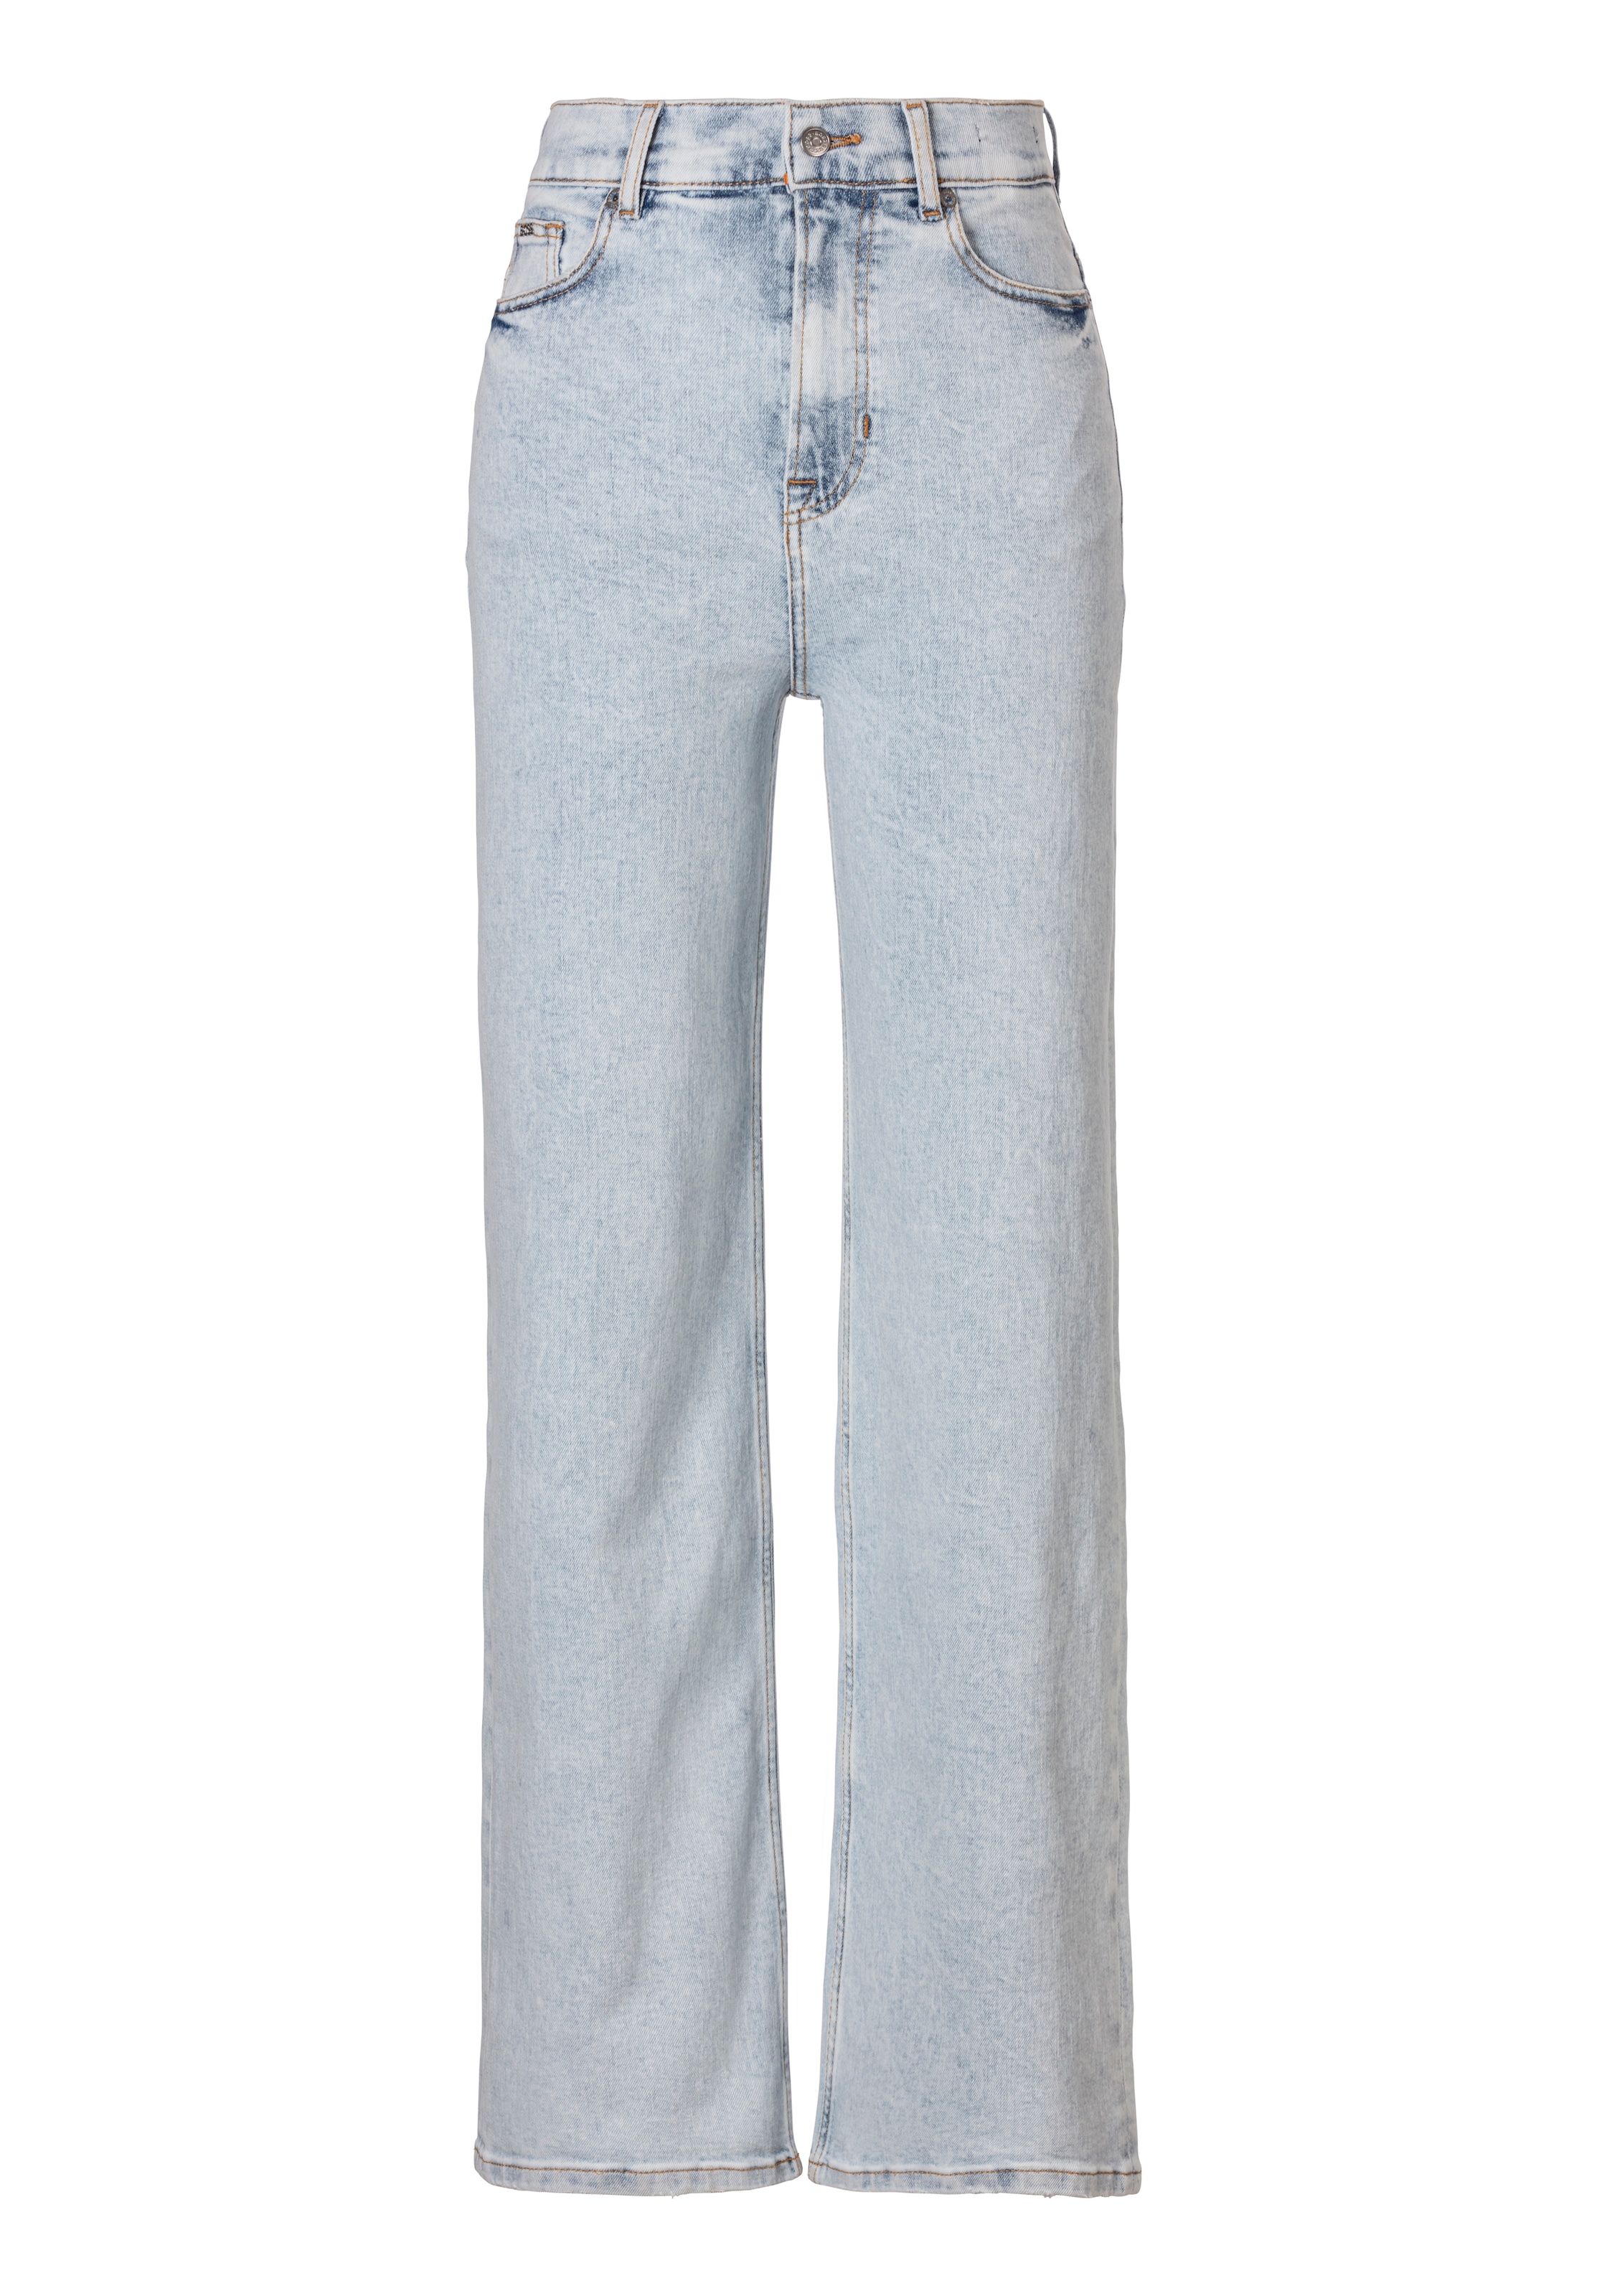 BOSS ORANGE Weite Jeans »Marlene High Rise Hochbund High Waist Premium Denim Jeans«, in Five-Pocket-Form